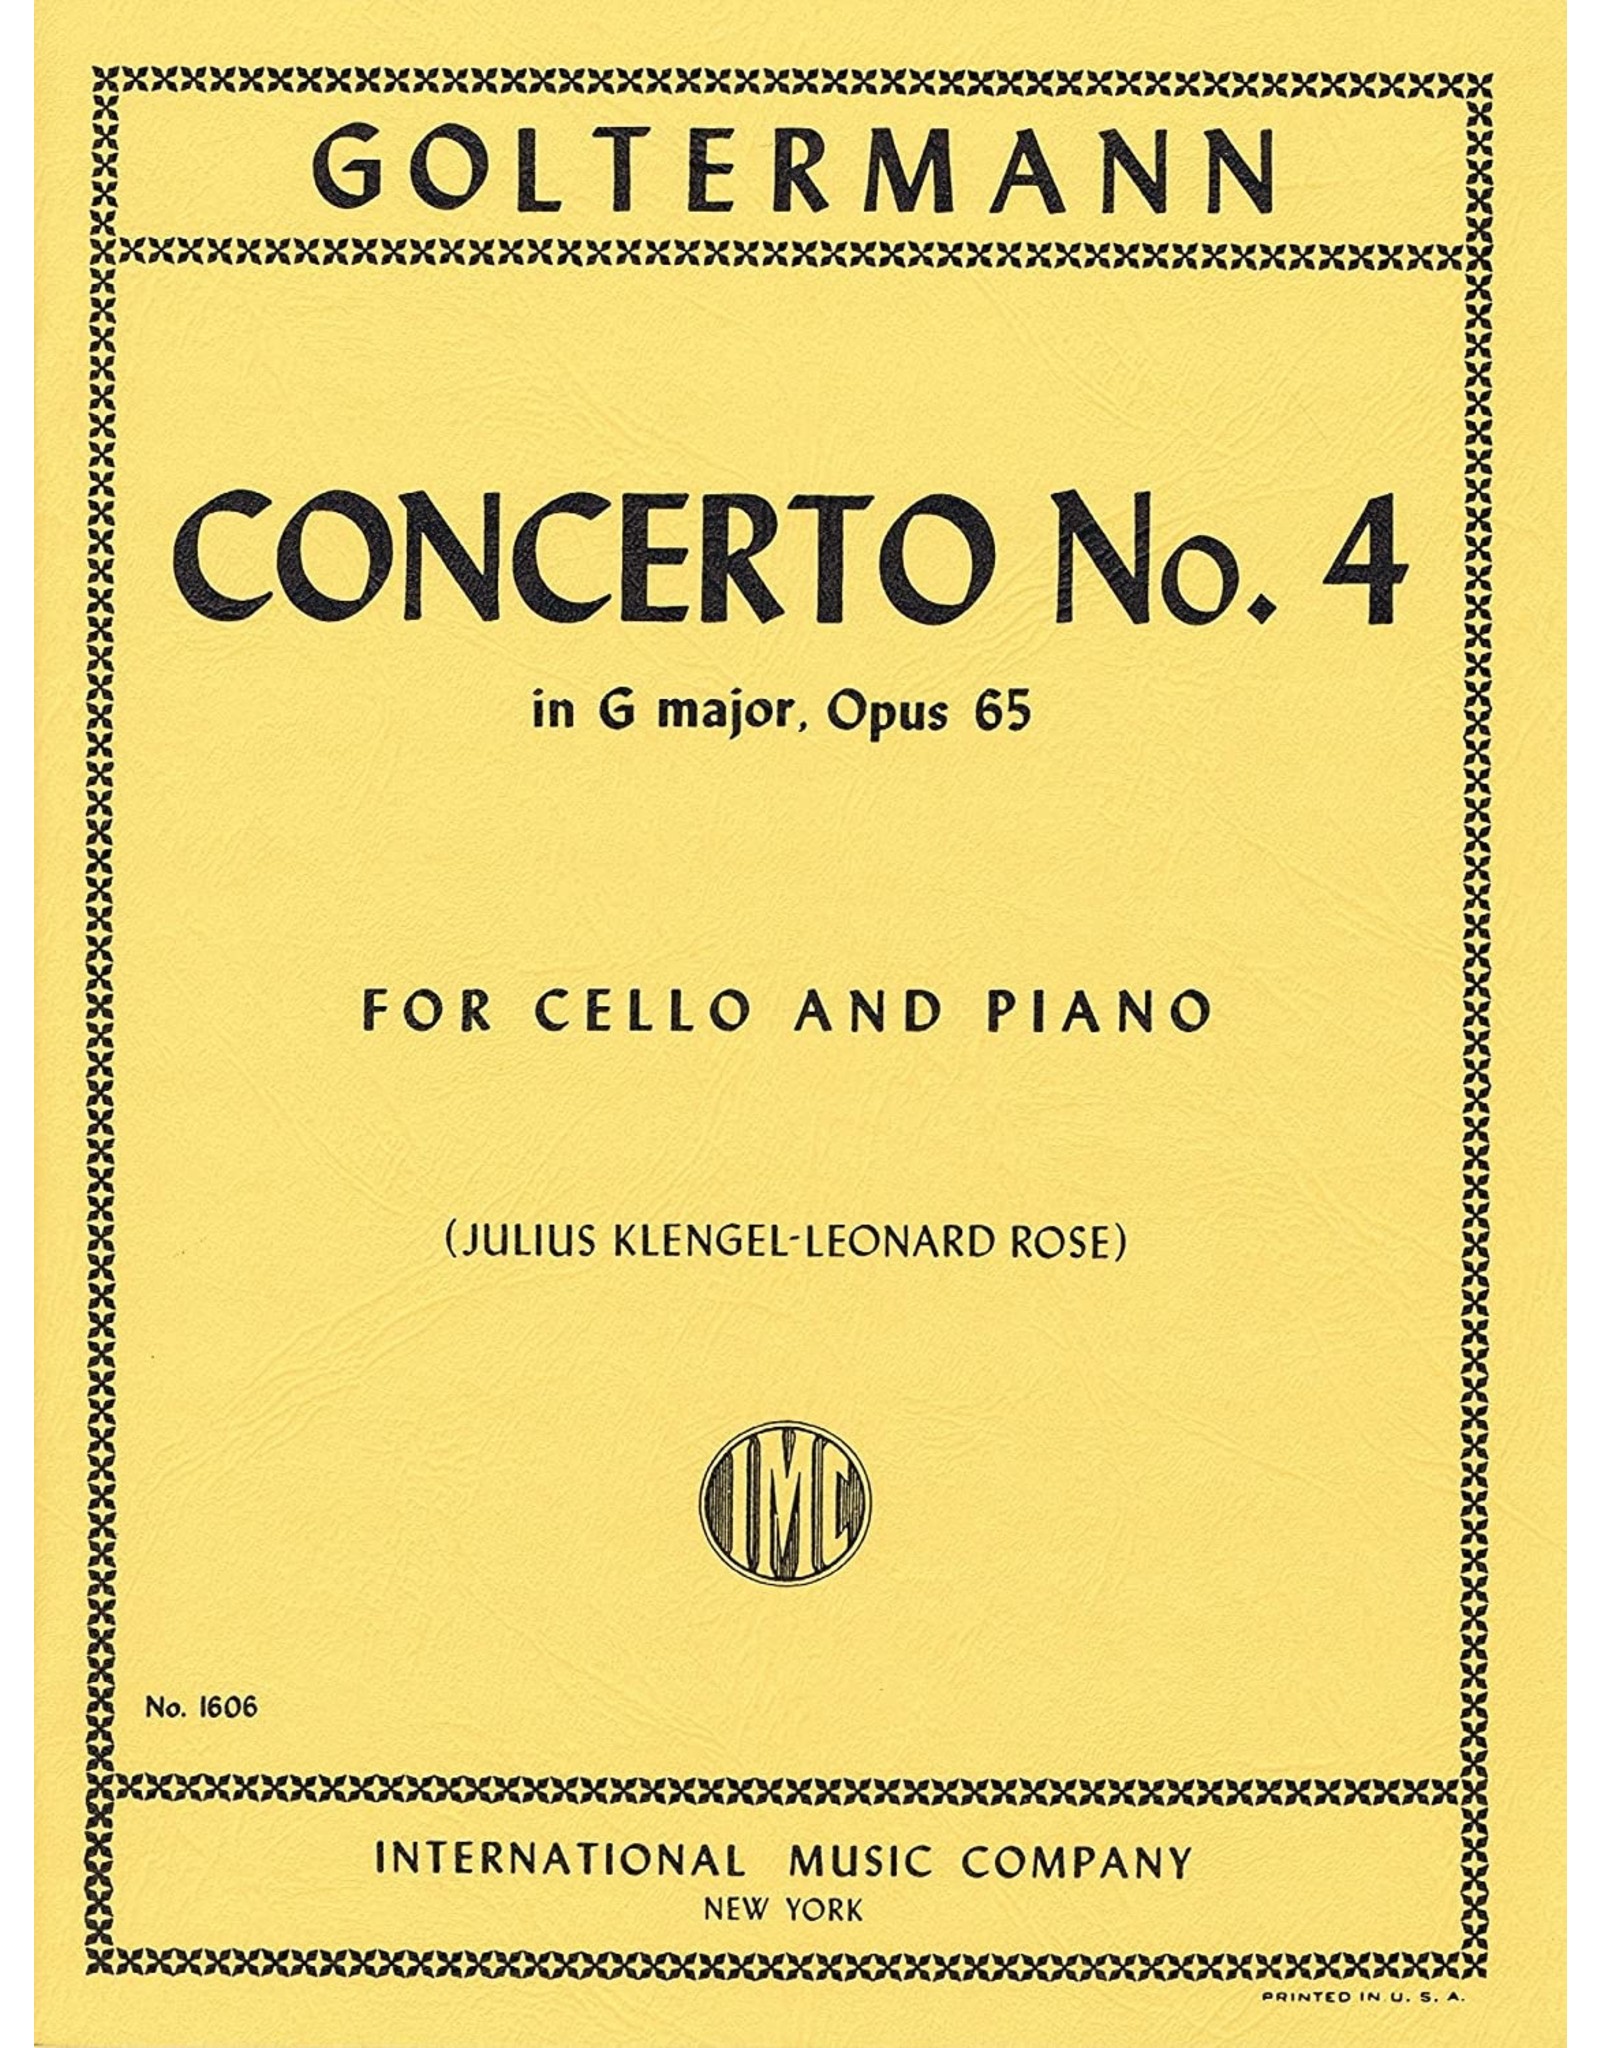 International Goltermann Concerto No. 4 Op.65 - Cello